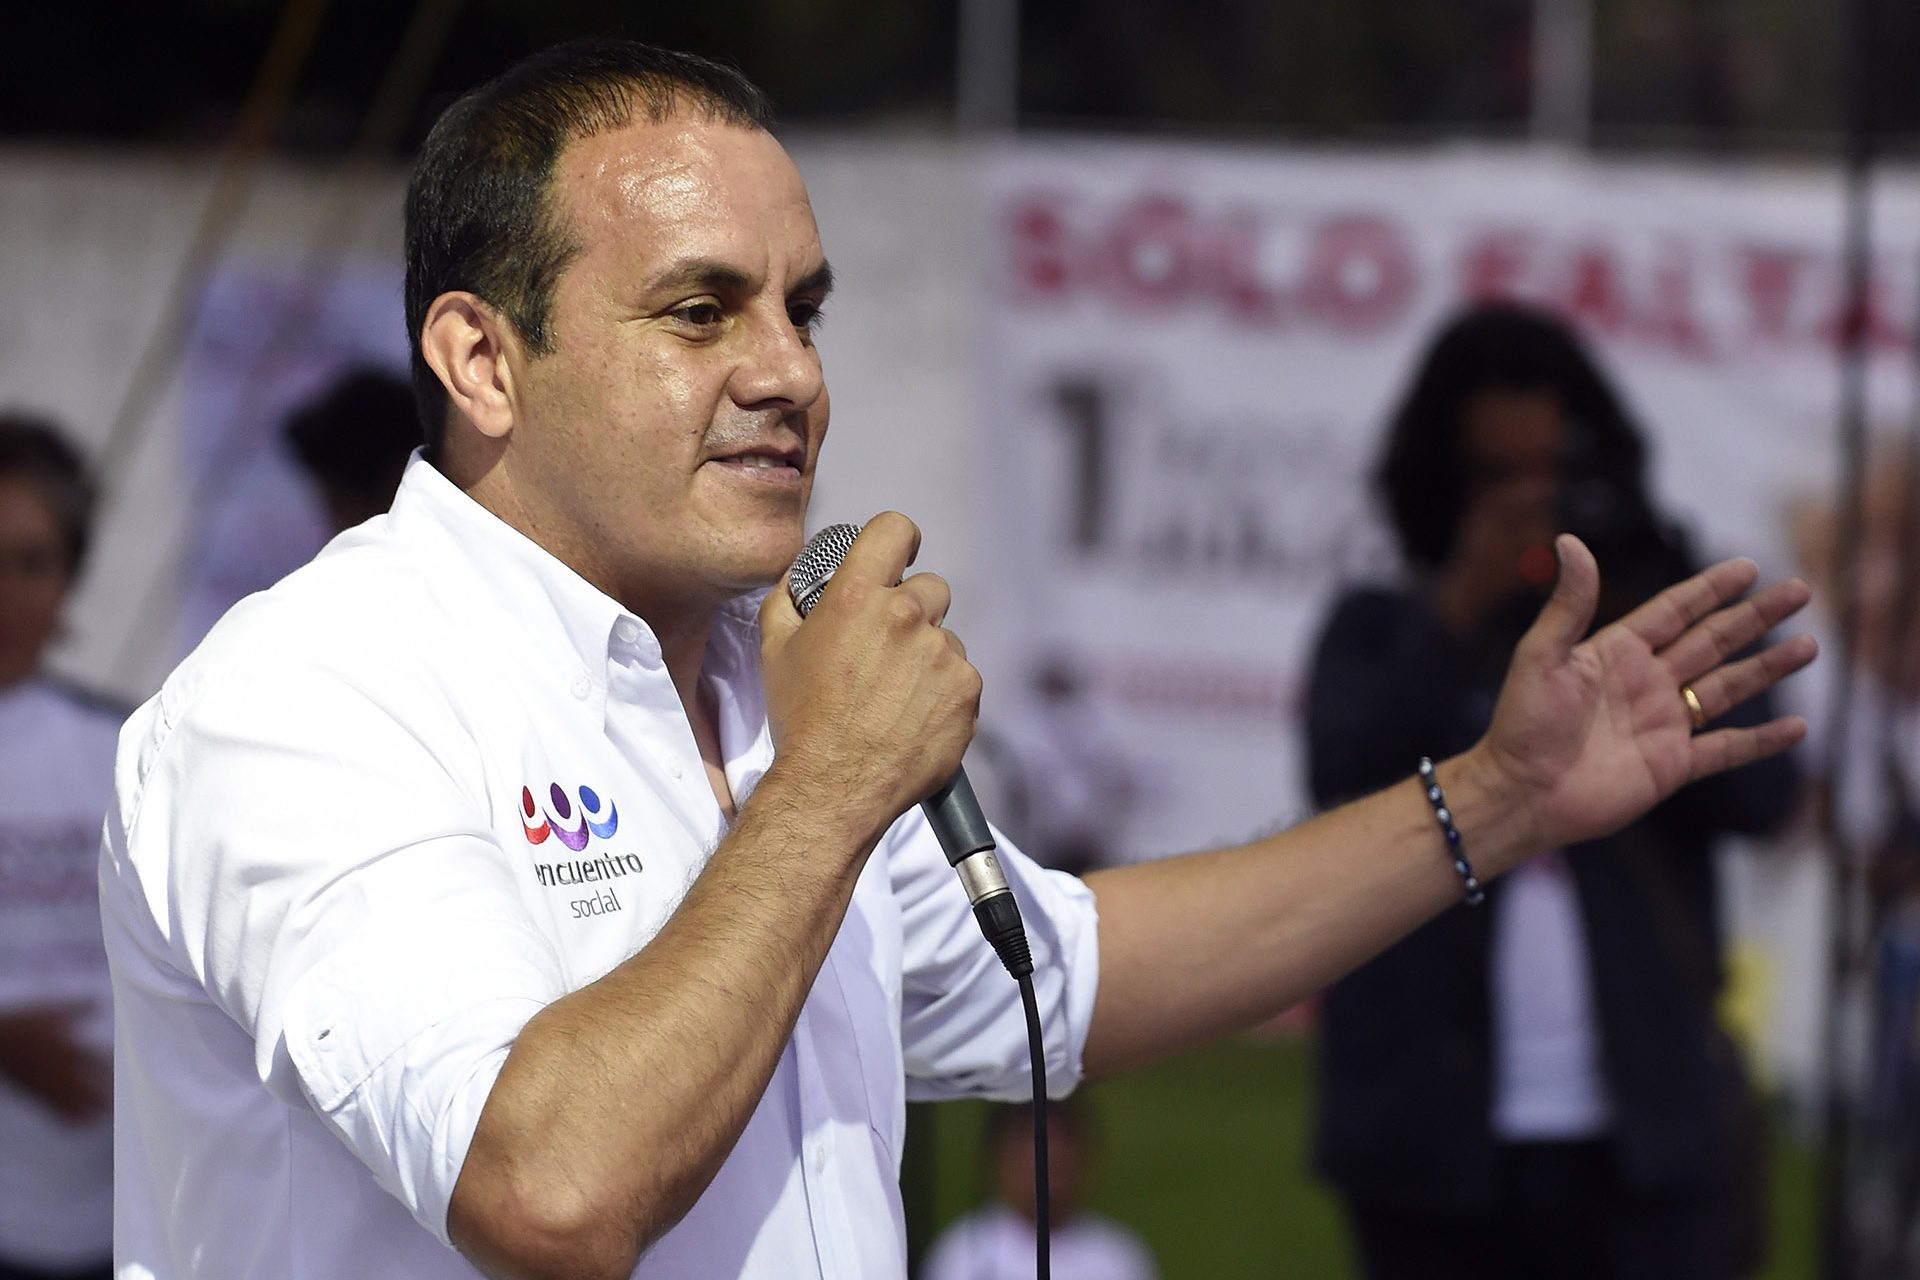 Elegido presidente municipal de Cuernavaca